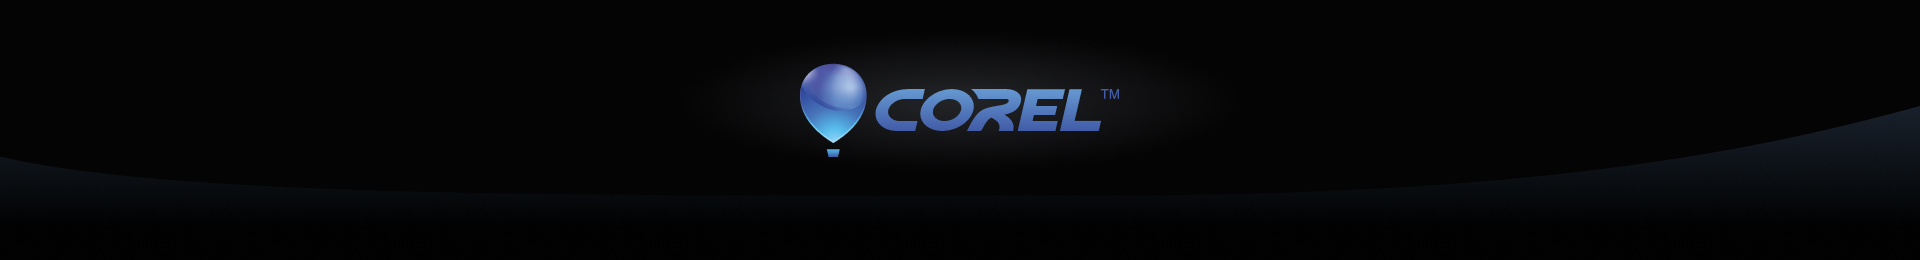 Corel Corporation в Softline